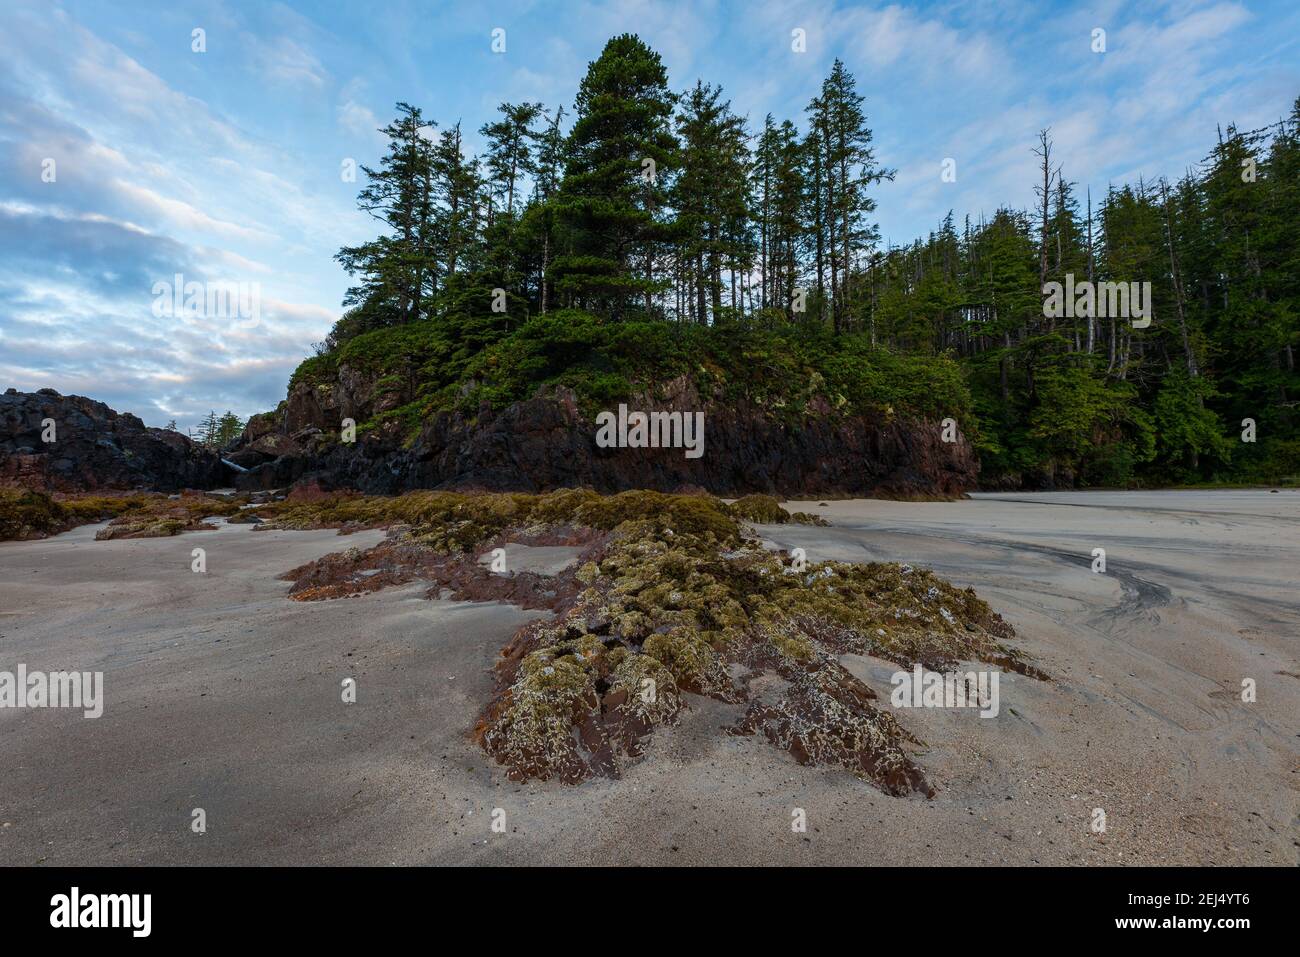 La costa sulla costa occidentale dell'isola di Vancouver, le spiagge che conducono a foreste senza fine. Foto Stock